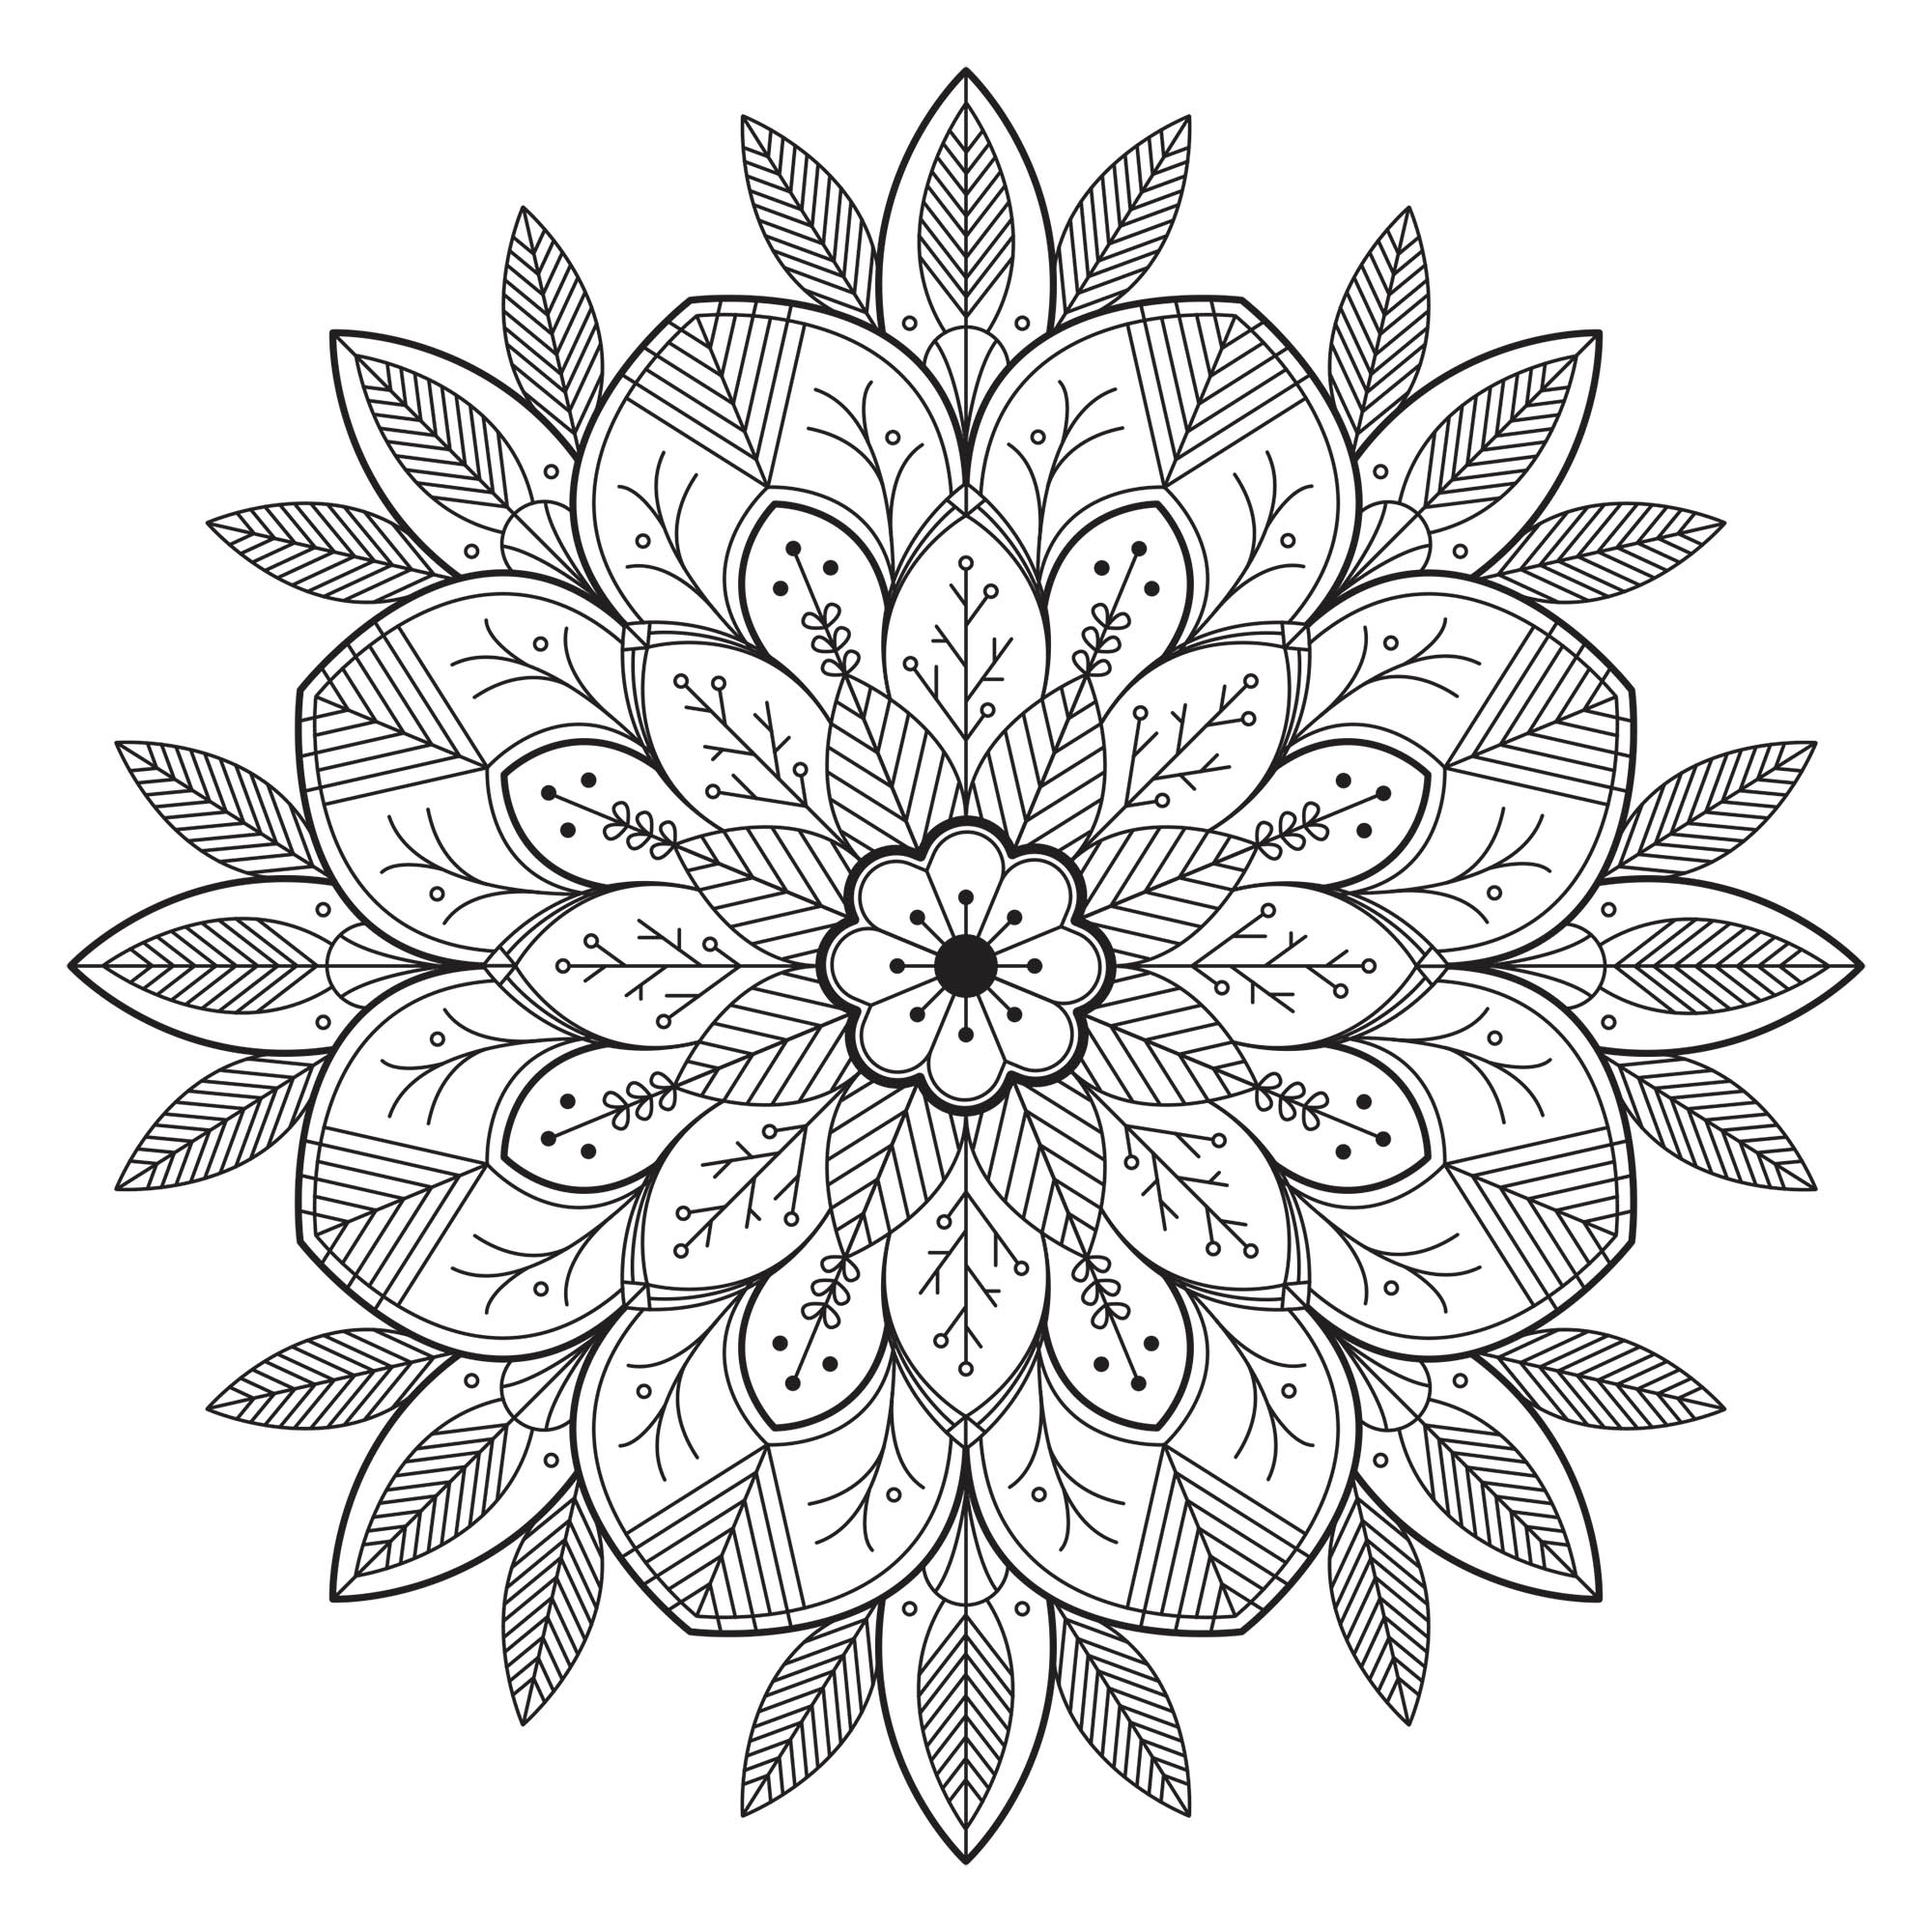 Mandala con flores. Proporcionado por el sitio Gifts.com